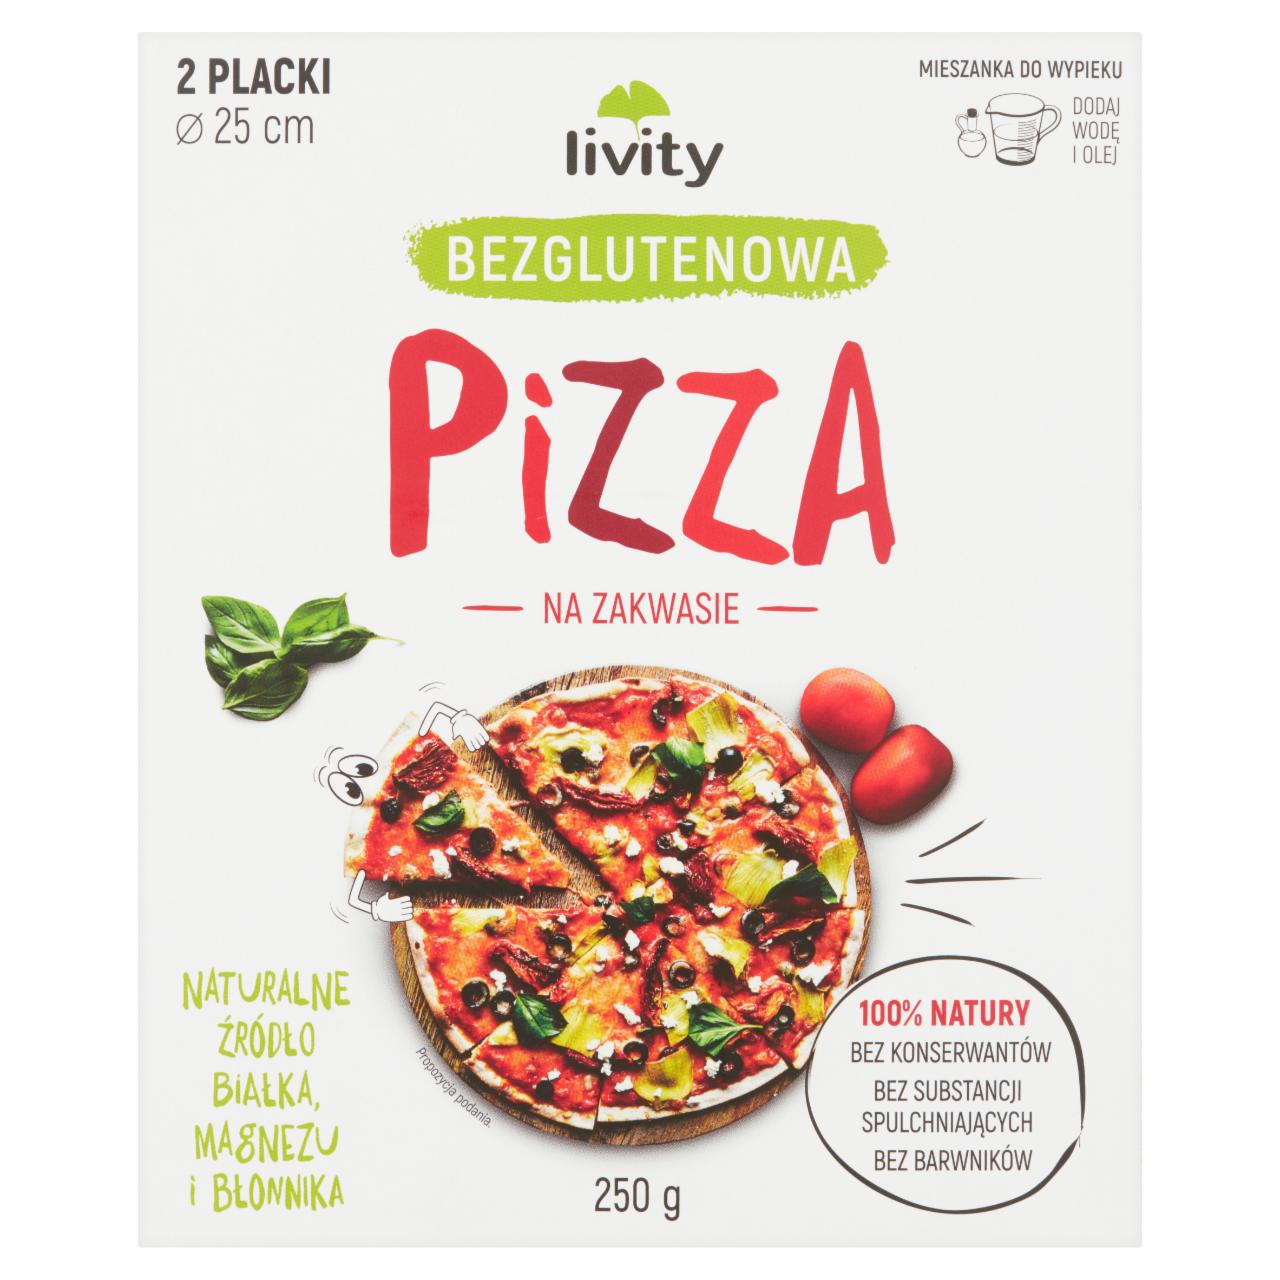 Zdjęcia - Livity Pizza bezglutenowa na zakwasie Mieszanka do wypieku 250 g